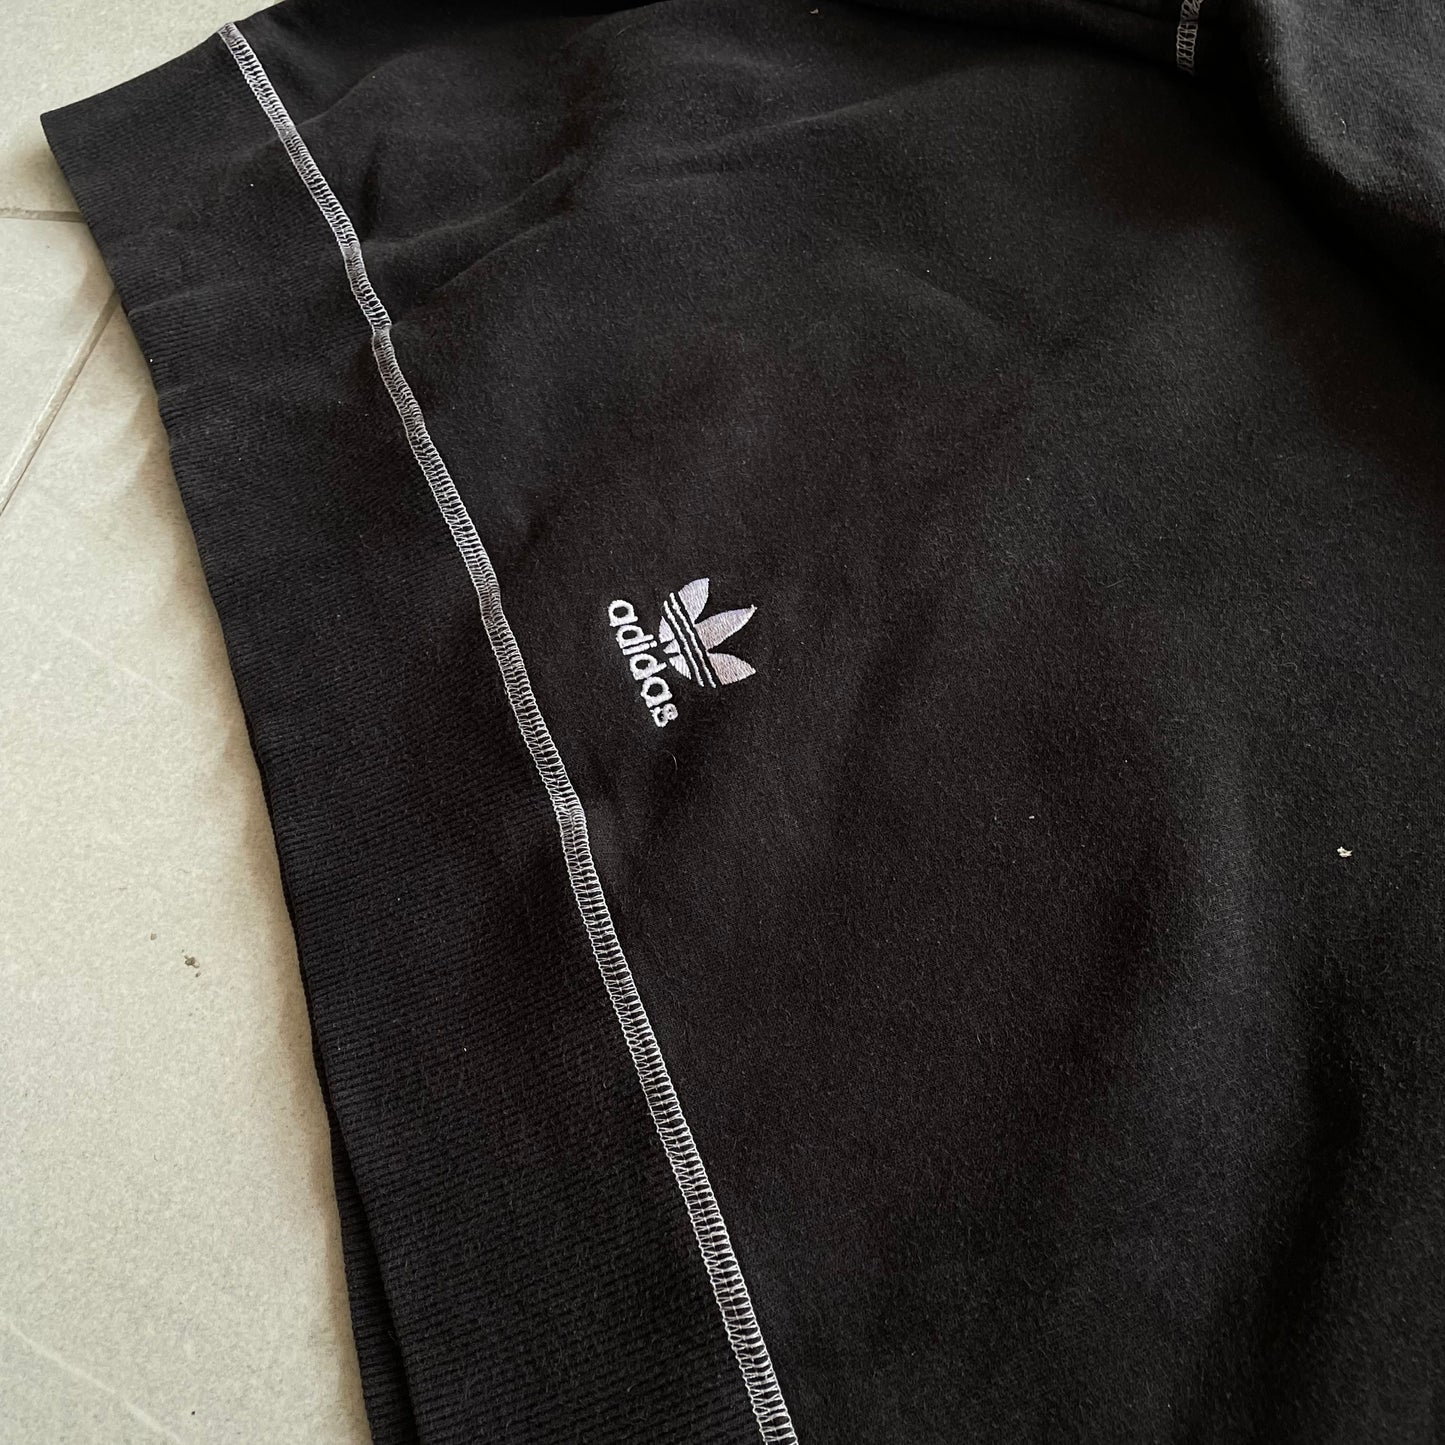 (Xl fit L Boxy Fit) Vintage Adidas Hoodie Negra con Bordados en Hilo Blanco